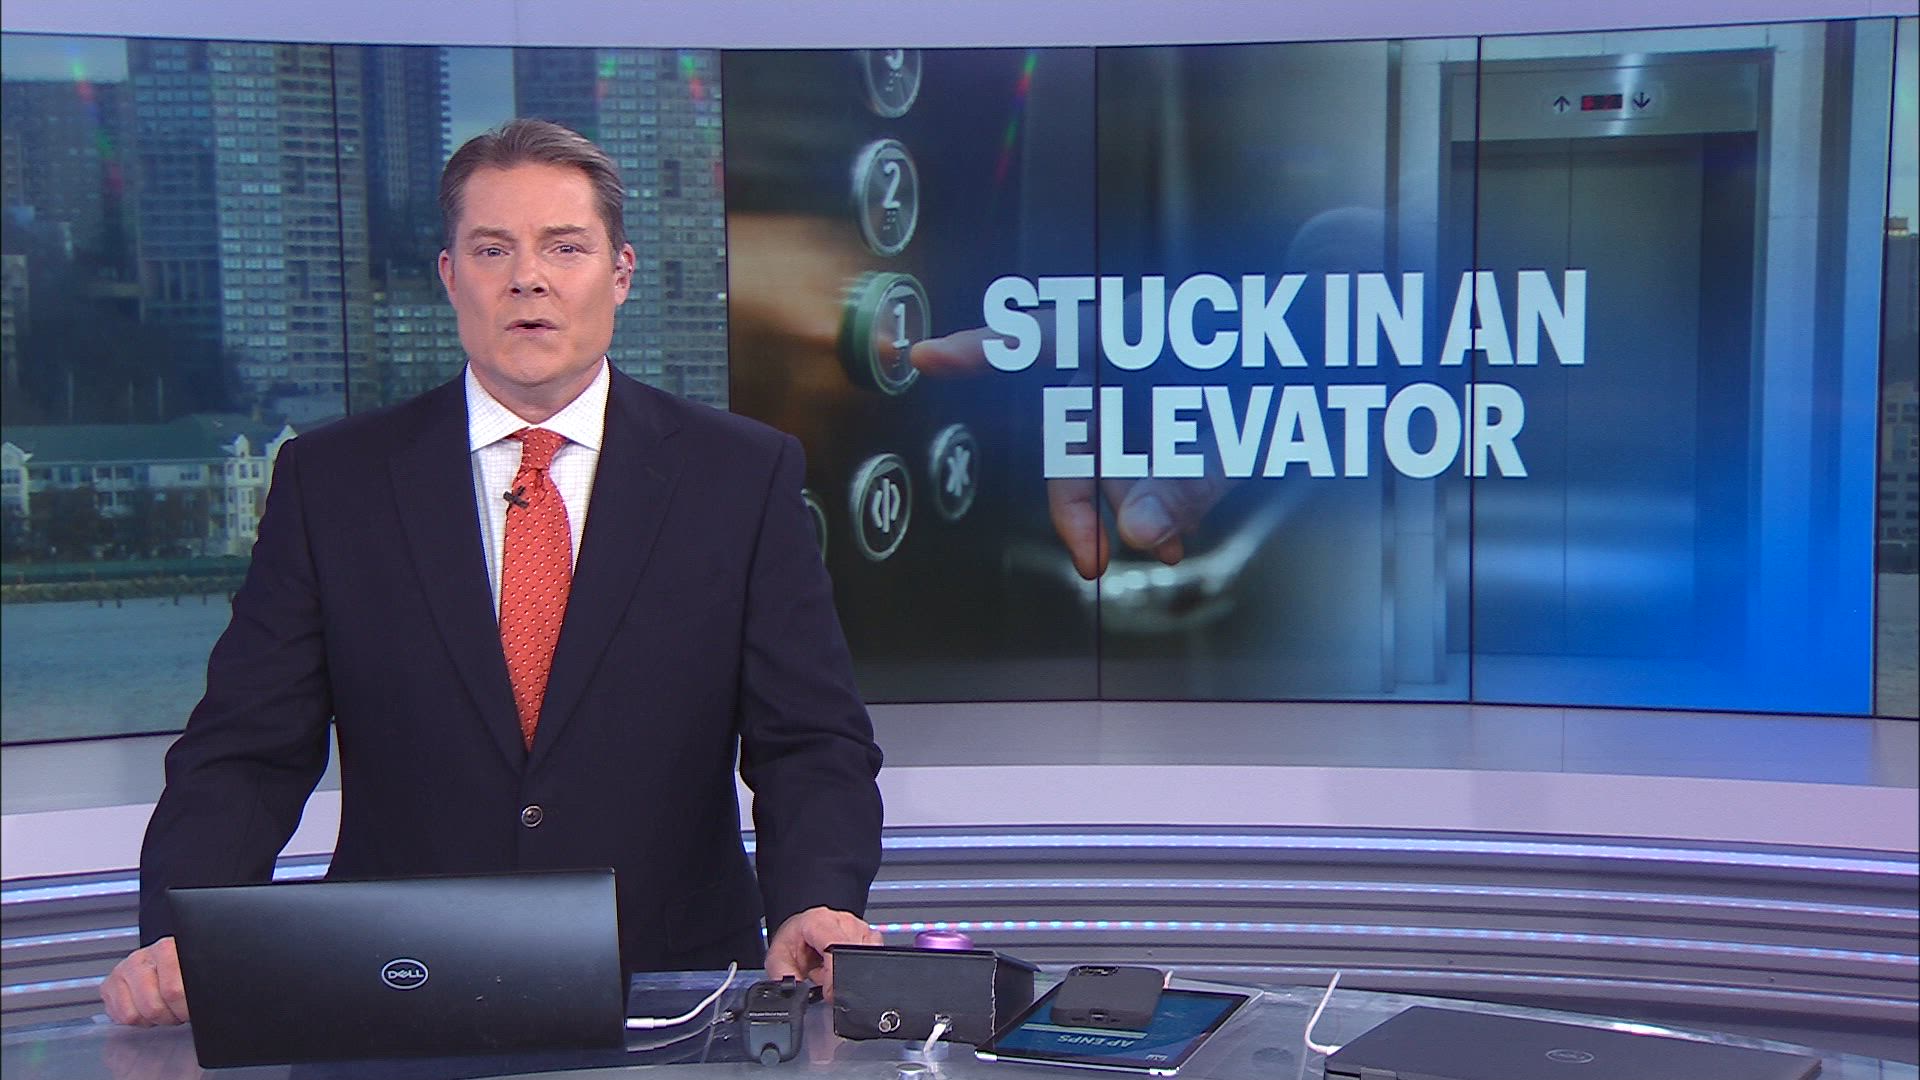 نجات 9 فرد گیر افتاده در آسانسور از پارکینک ساختمان New Brunswick